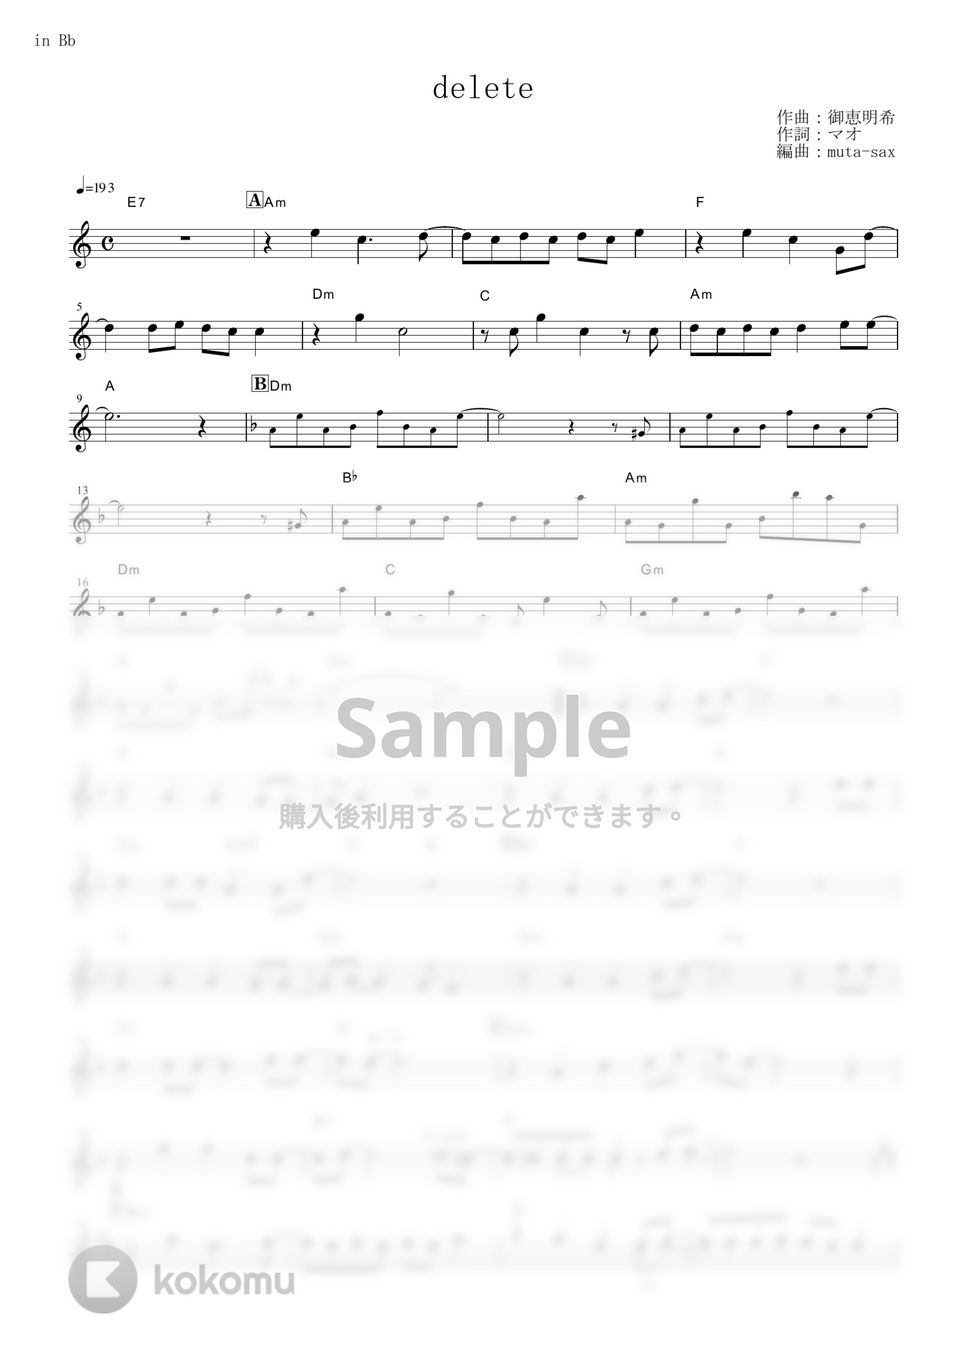 シド - delete (『七つの大罪 神々の逆鱗』 / in Bb) by muta-sax